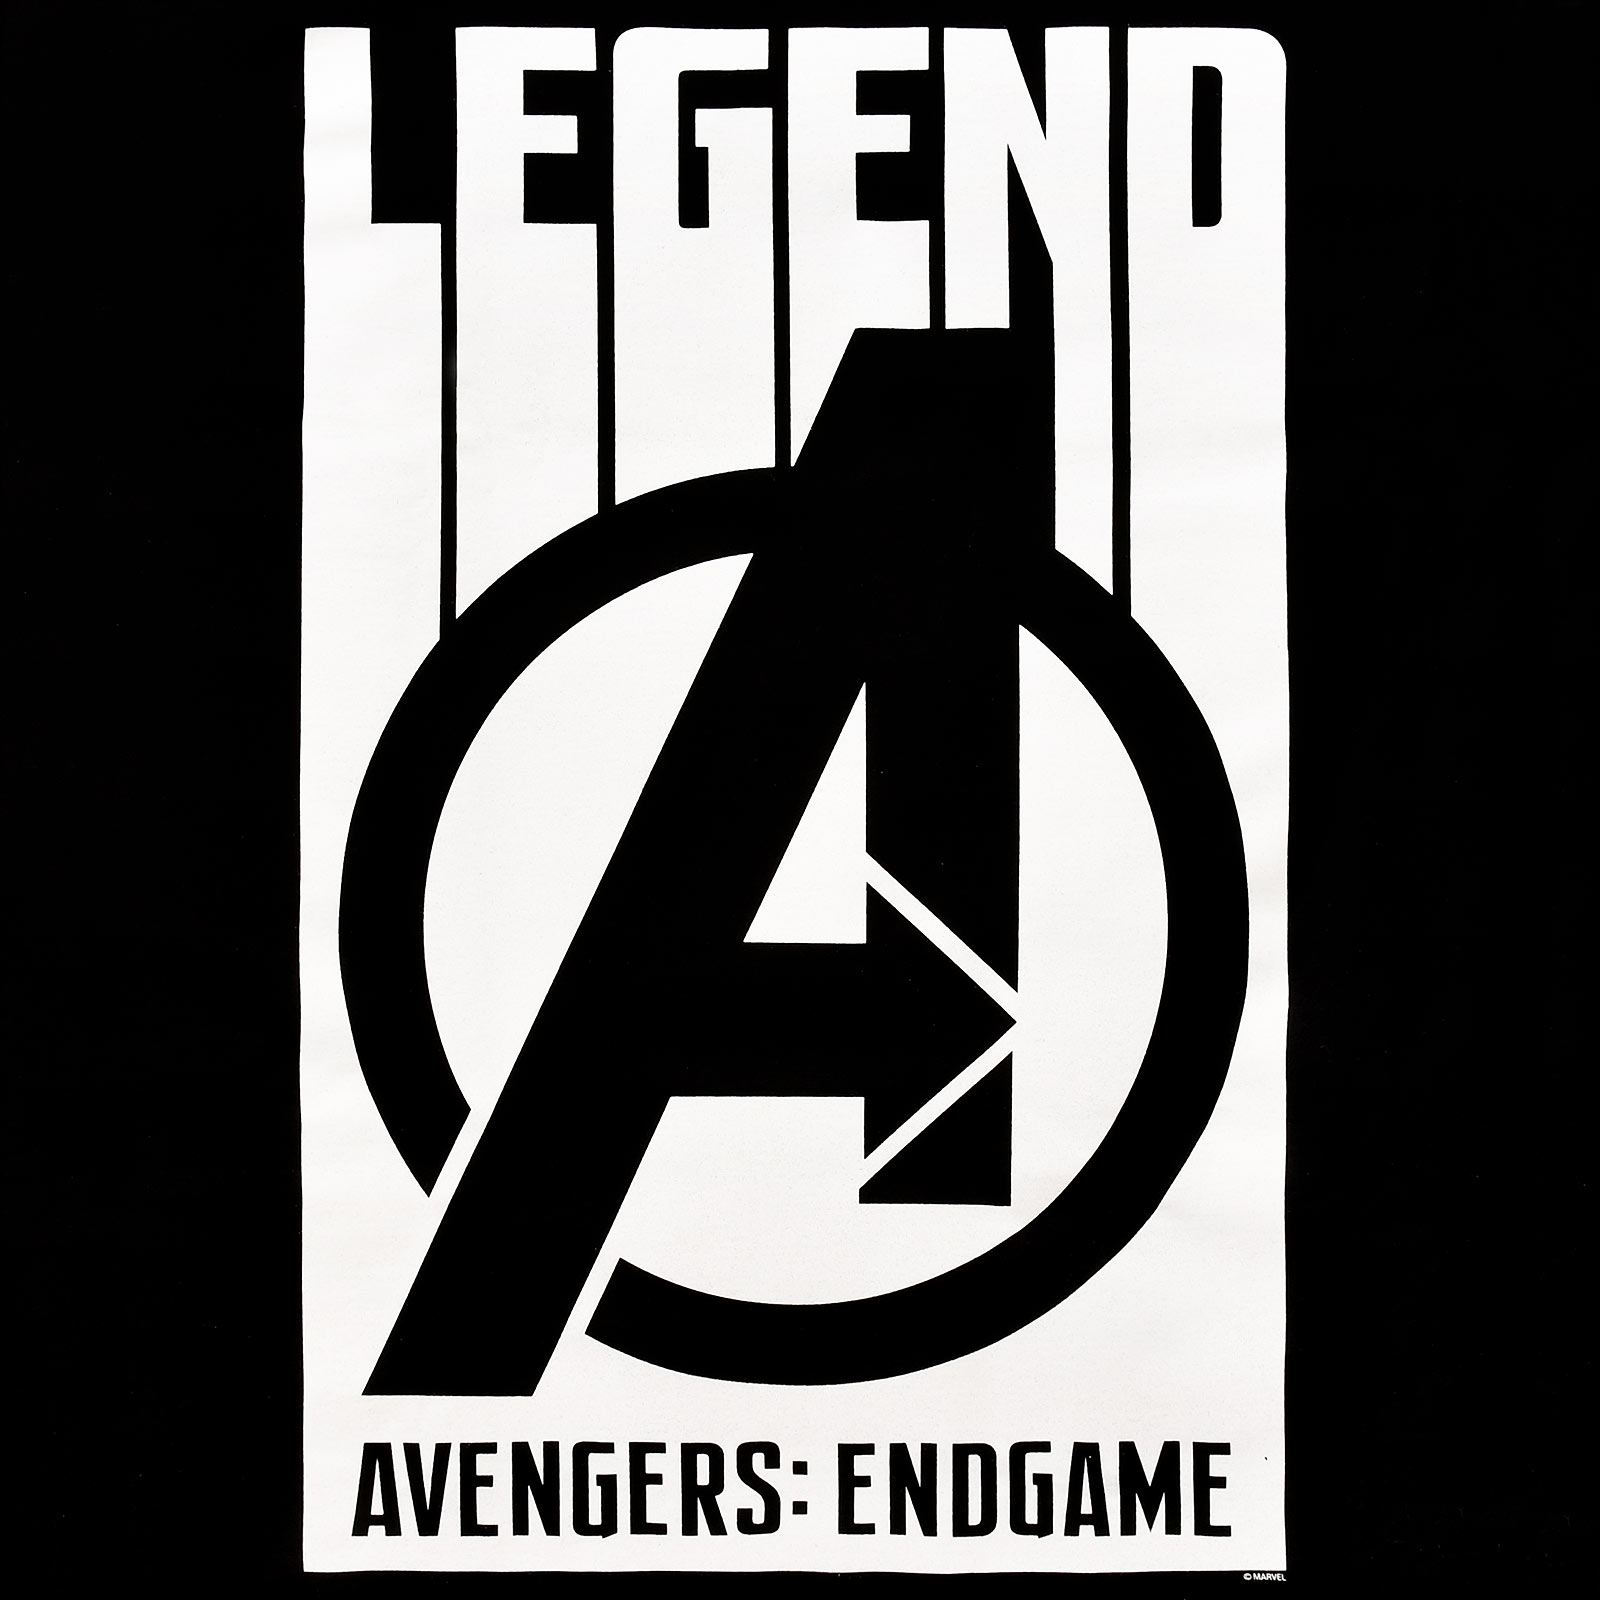 Avengers - Legend T-Shirt schwarz